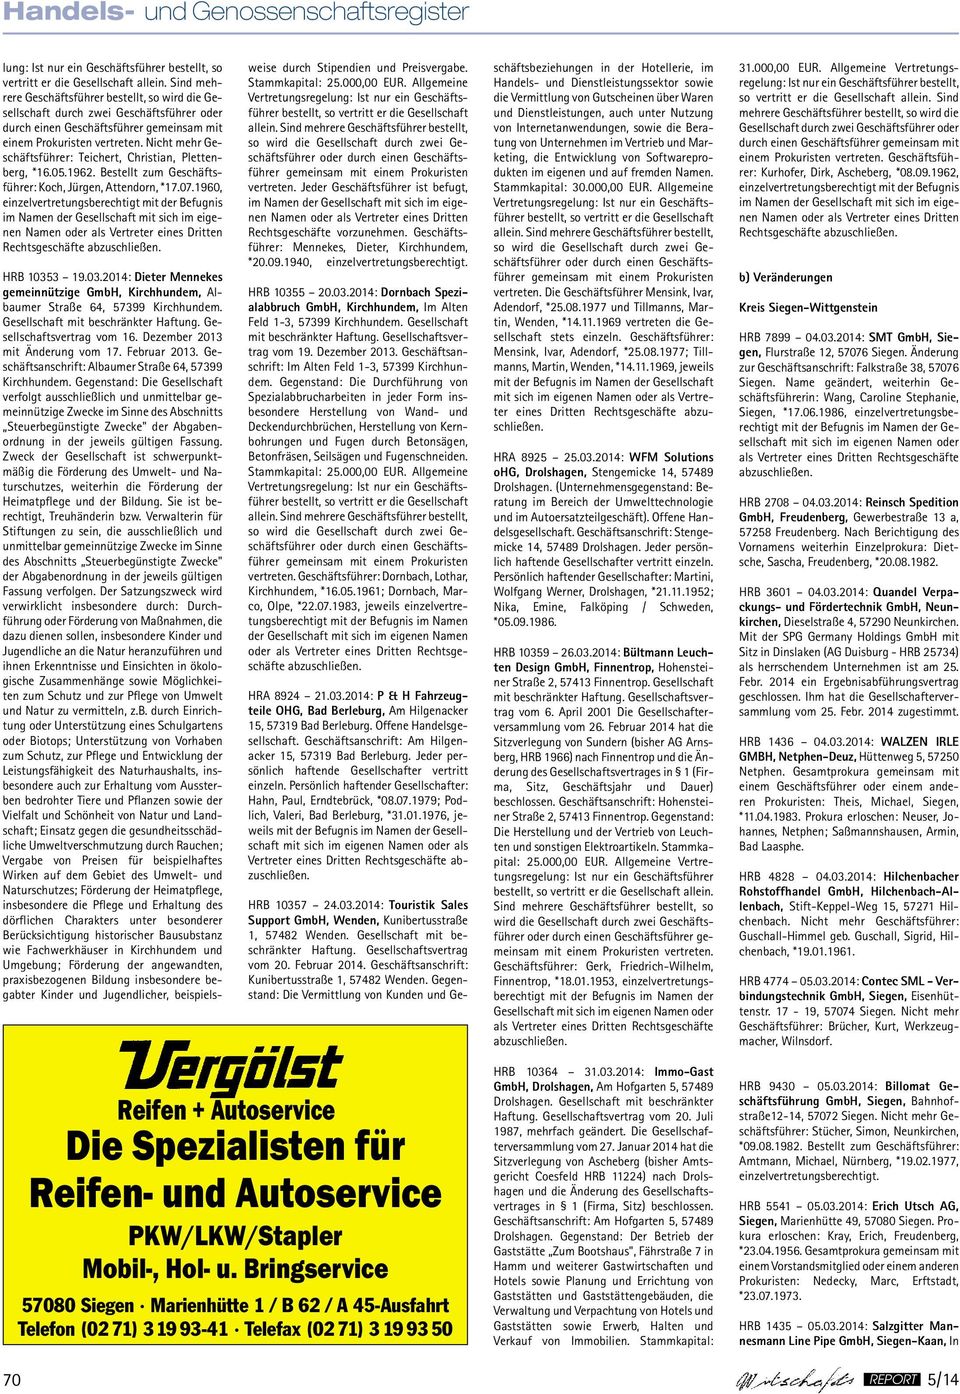 3 19.03.2014: Dieter Mennekes gemeinnützige GmbH, Kirchhundem, Albaumer Straße 64, 57399 Kirchhundem. Gesellschaft vom 16. Dezember 2013 mit Änderung vom 17. Februar 2013.